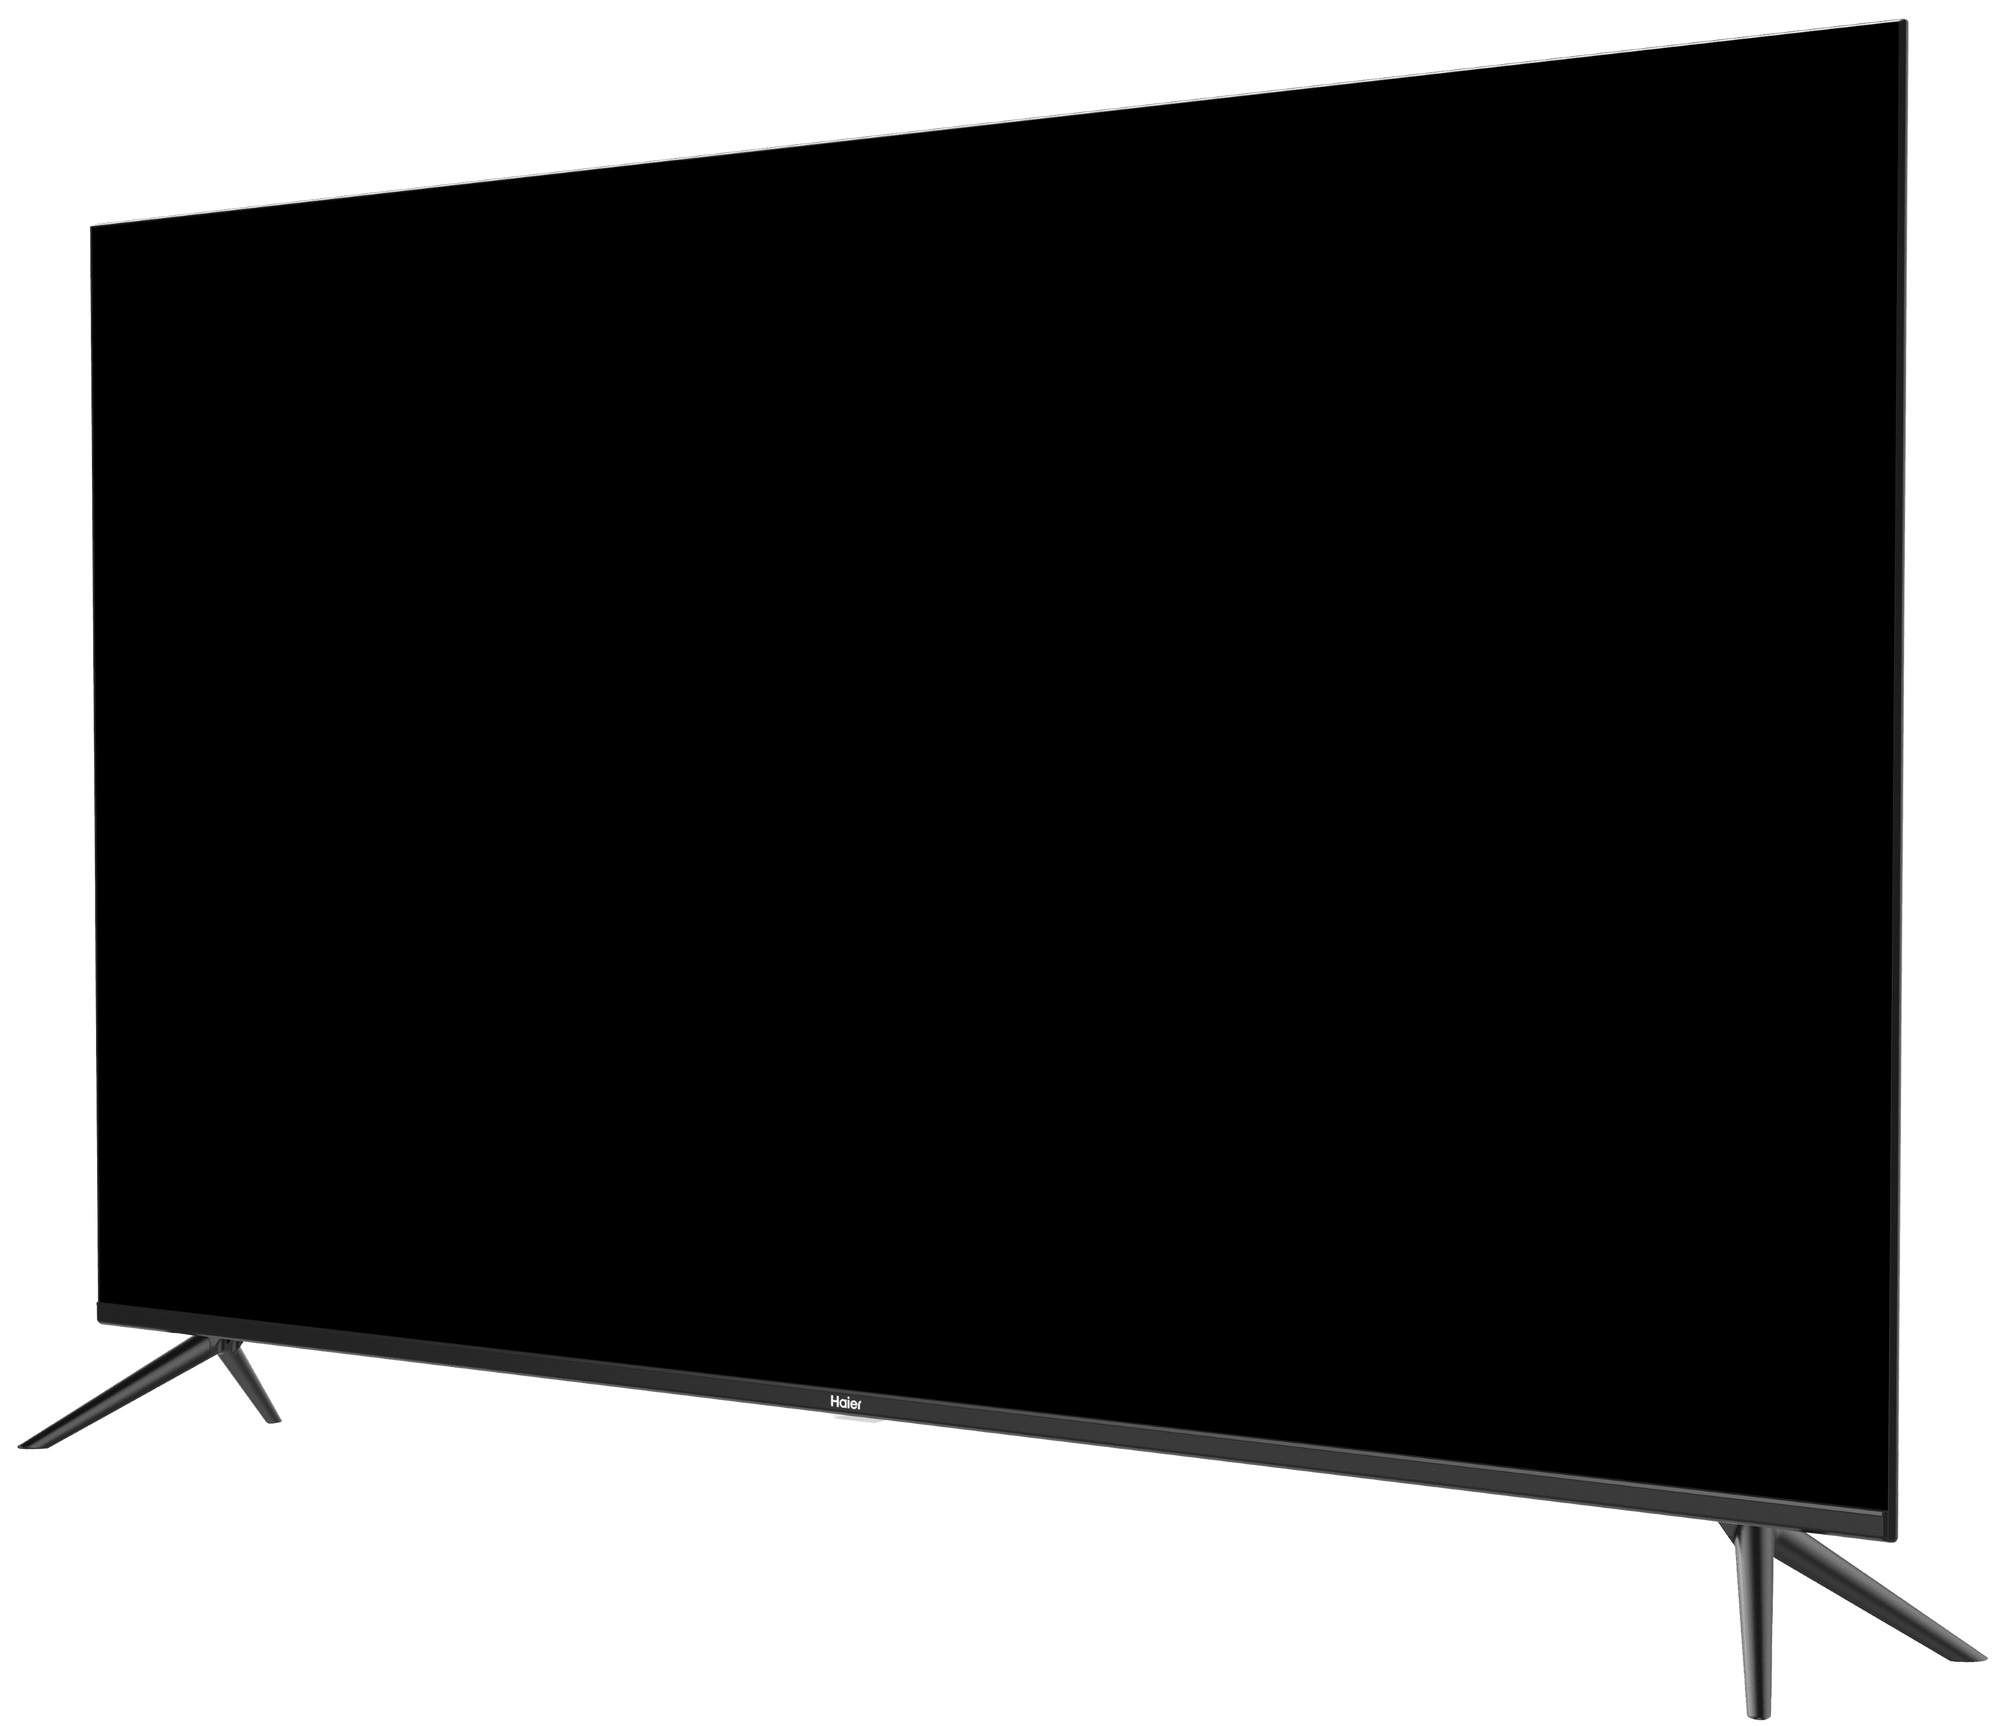 Телевизоры haier купить в спб. Телевизор Haier 50 Smart TV DX. Телевизор Haier 42 Smart TV HX. Телевизор Haier 32 Smart TV MX. Телевизор Haier 55 Smart TV s1.